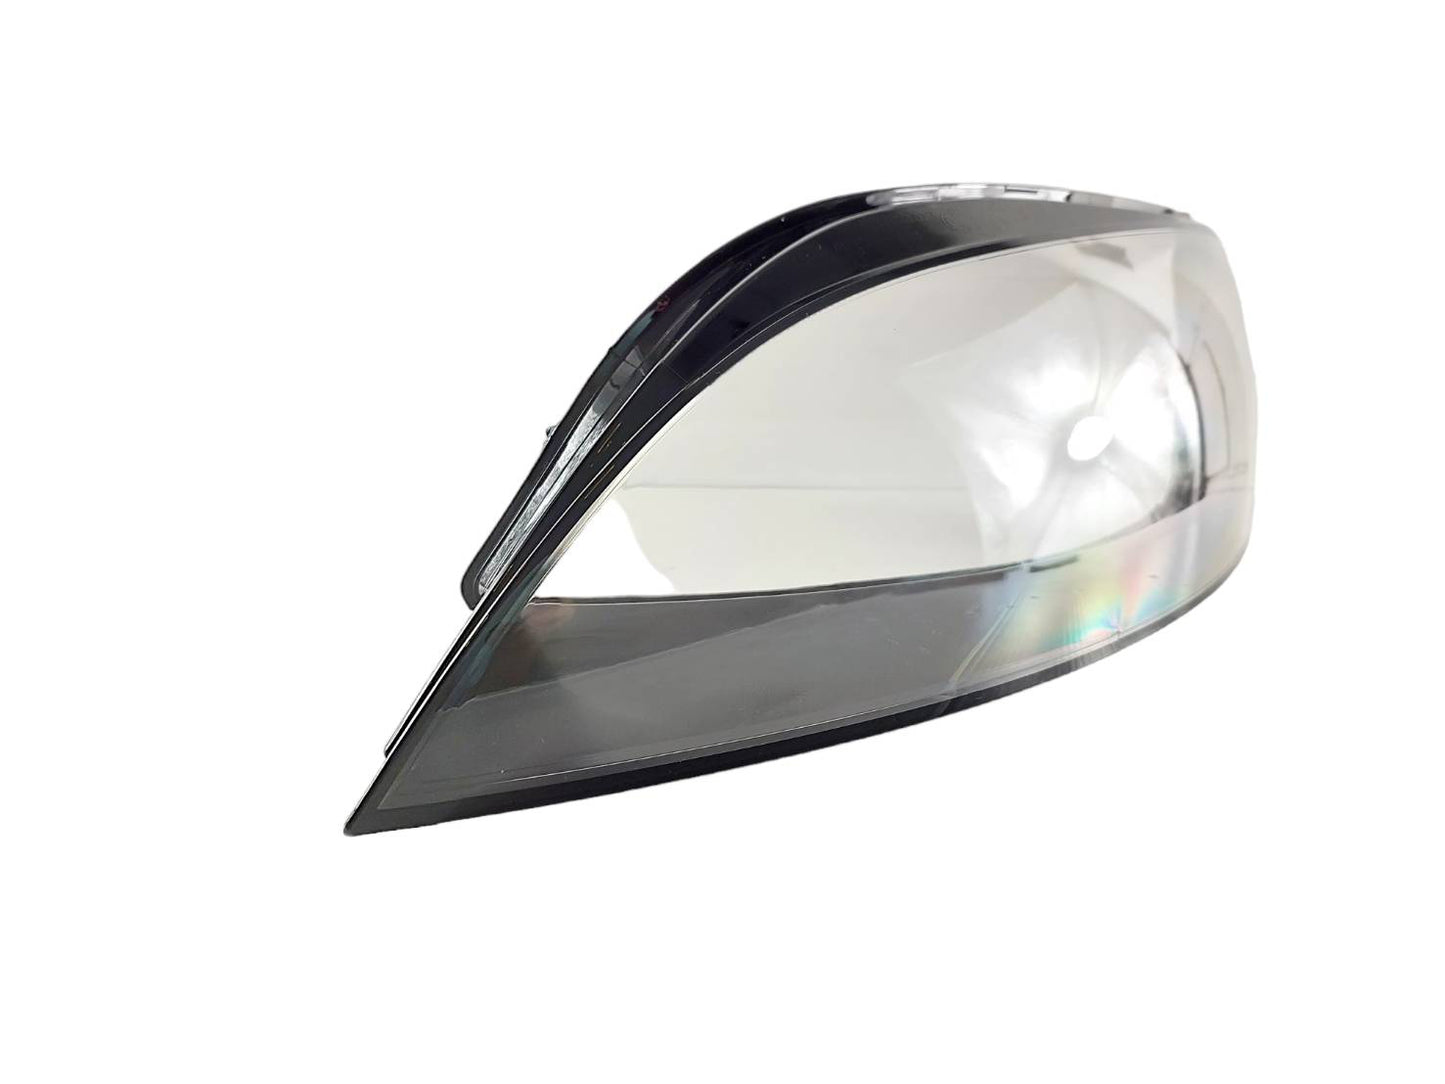 Headlamp Cover Shell for Audi TT (15-21)